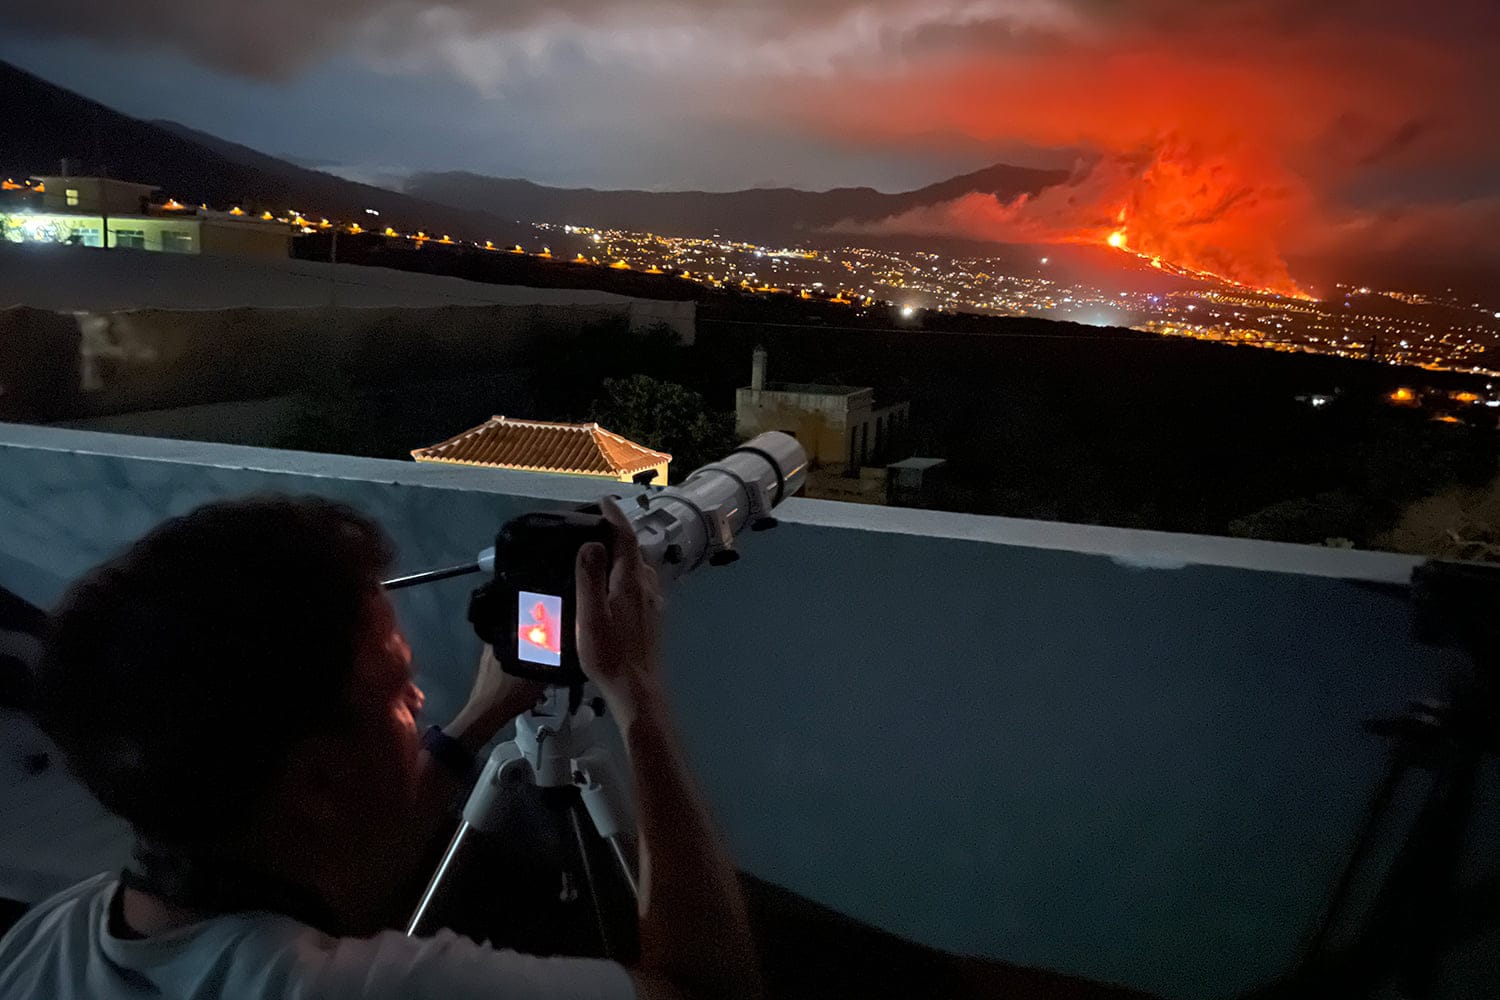 "Heute keine Sterne fotografieren": Mit der Ausrüstung des Astronomiezentrums und Gleichgesinnten fuhr Kai von Schauroth los, um Bilder vom Vulkan zu machen.